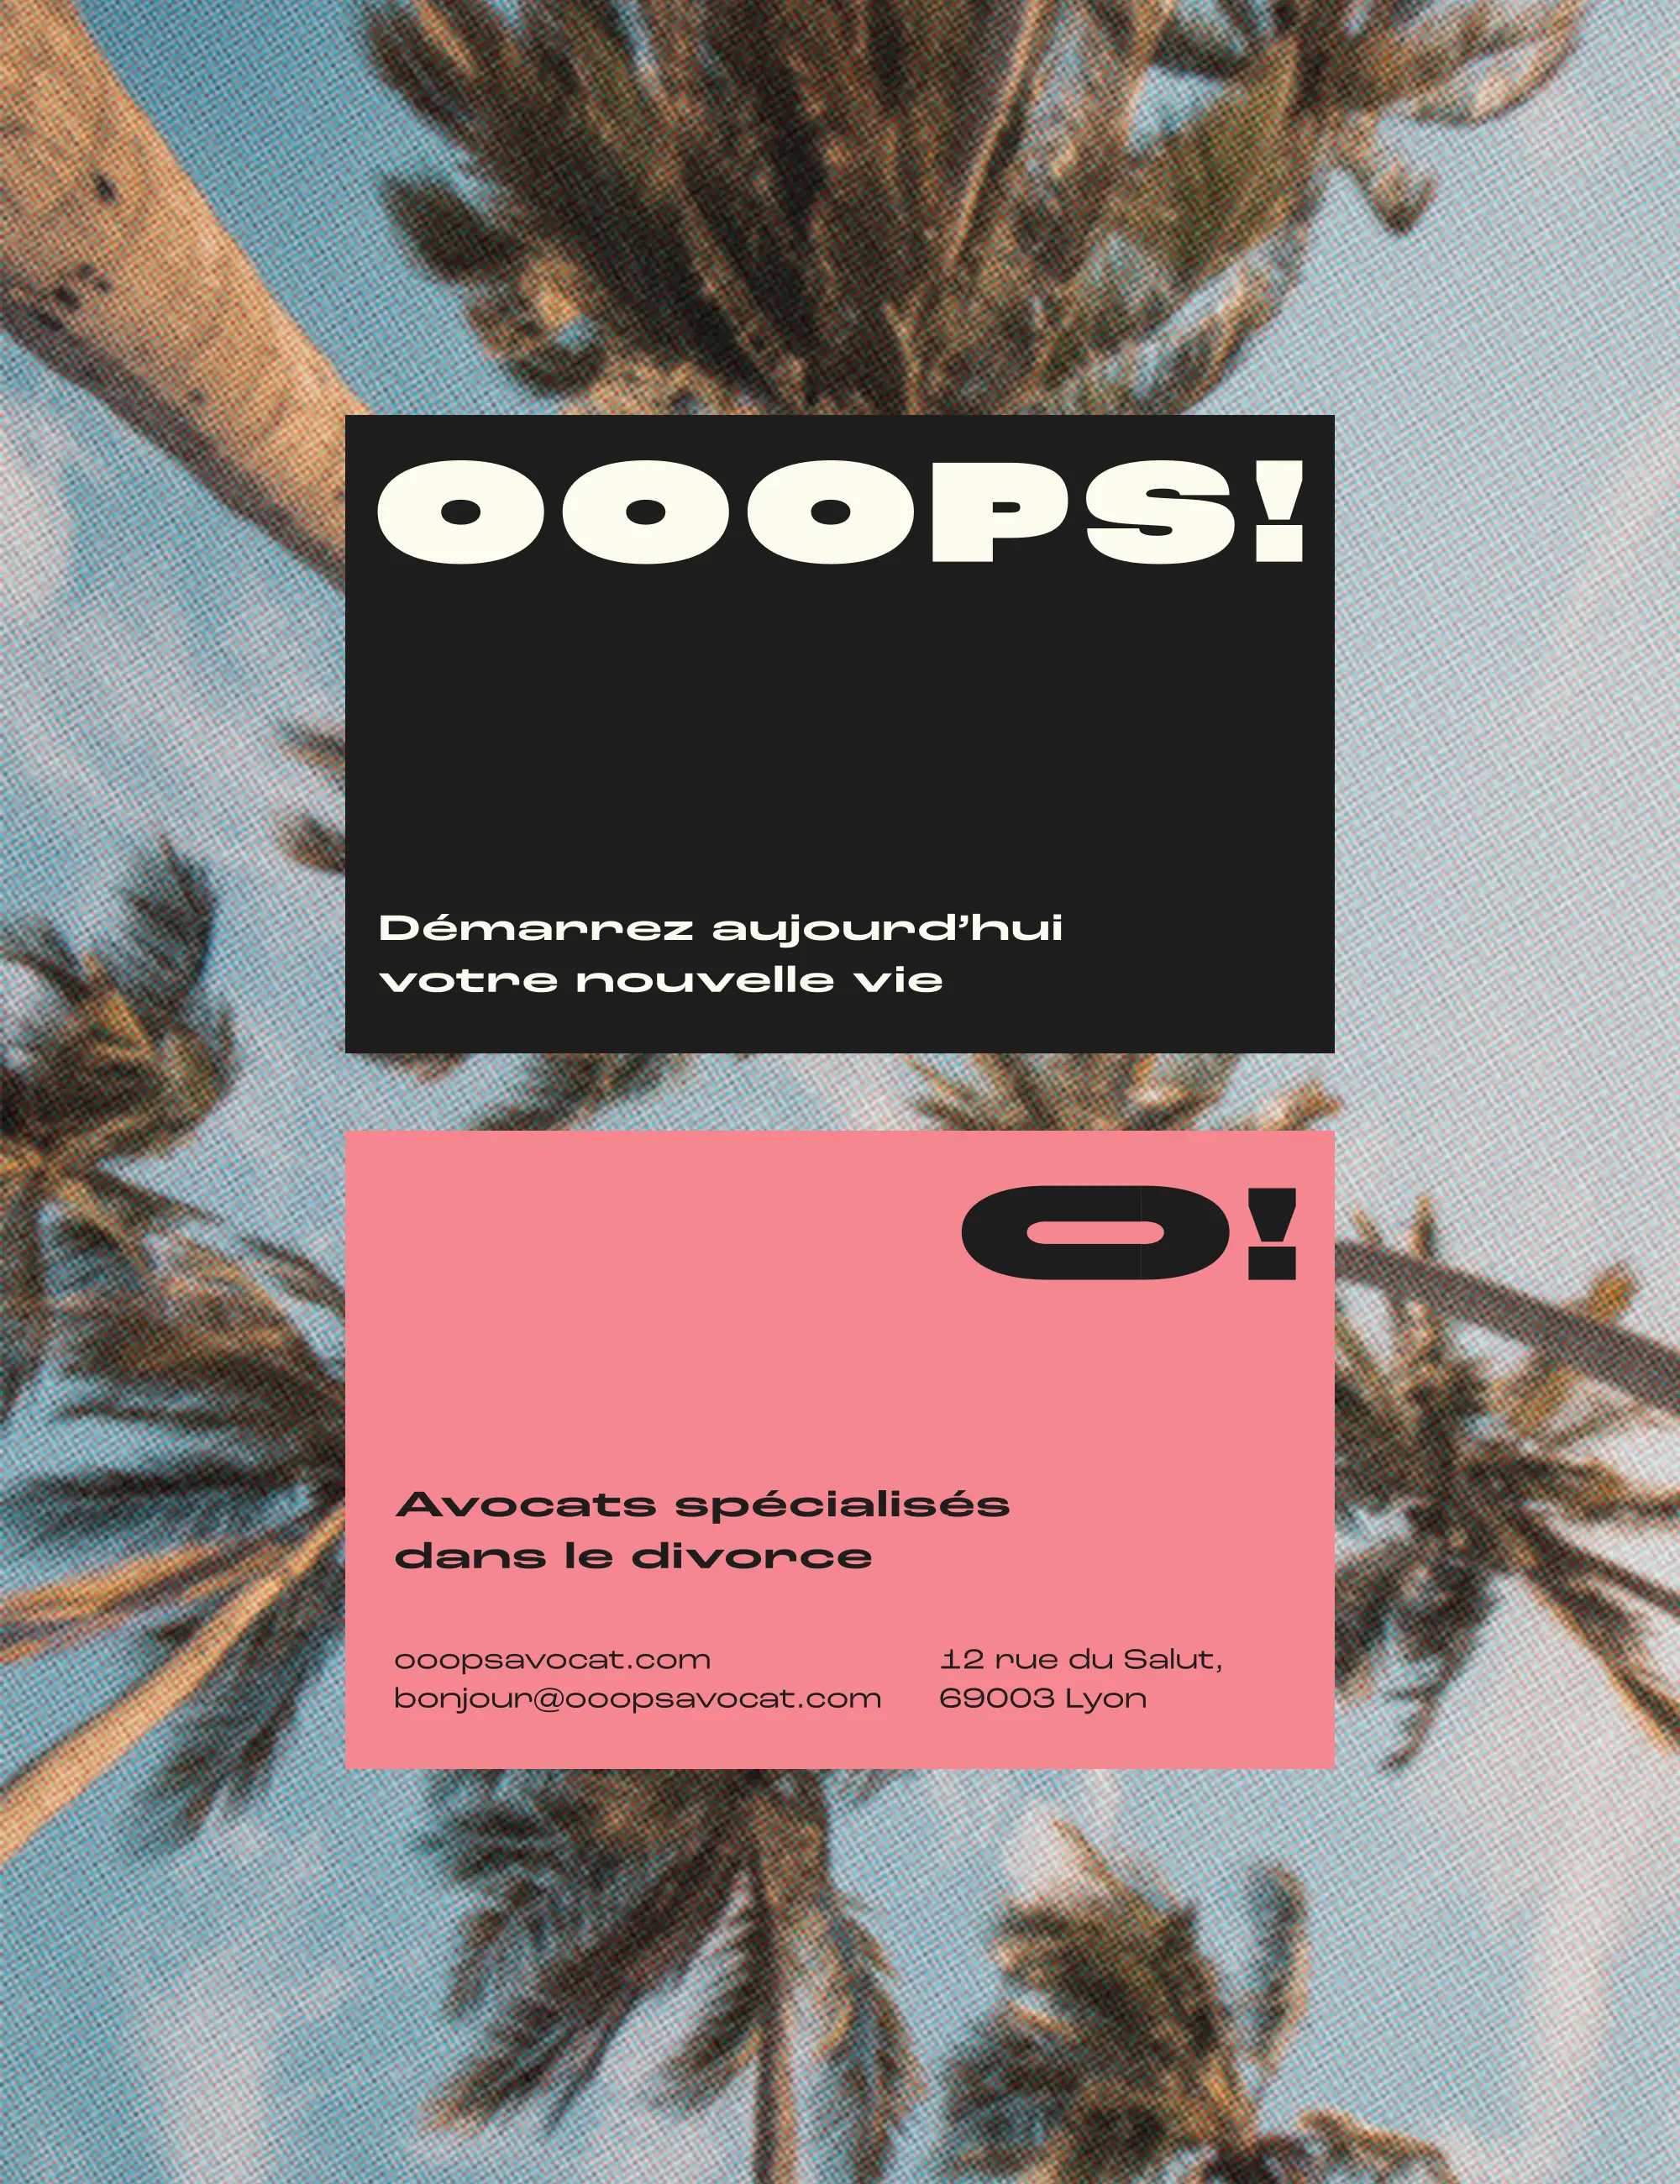 Carte de visite OOOPS! recto et verso, sur fond photo de palmiers